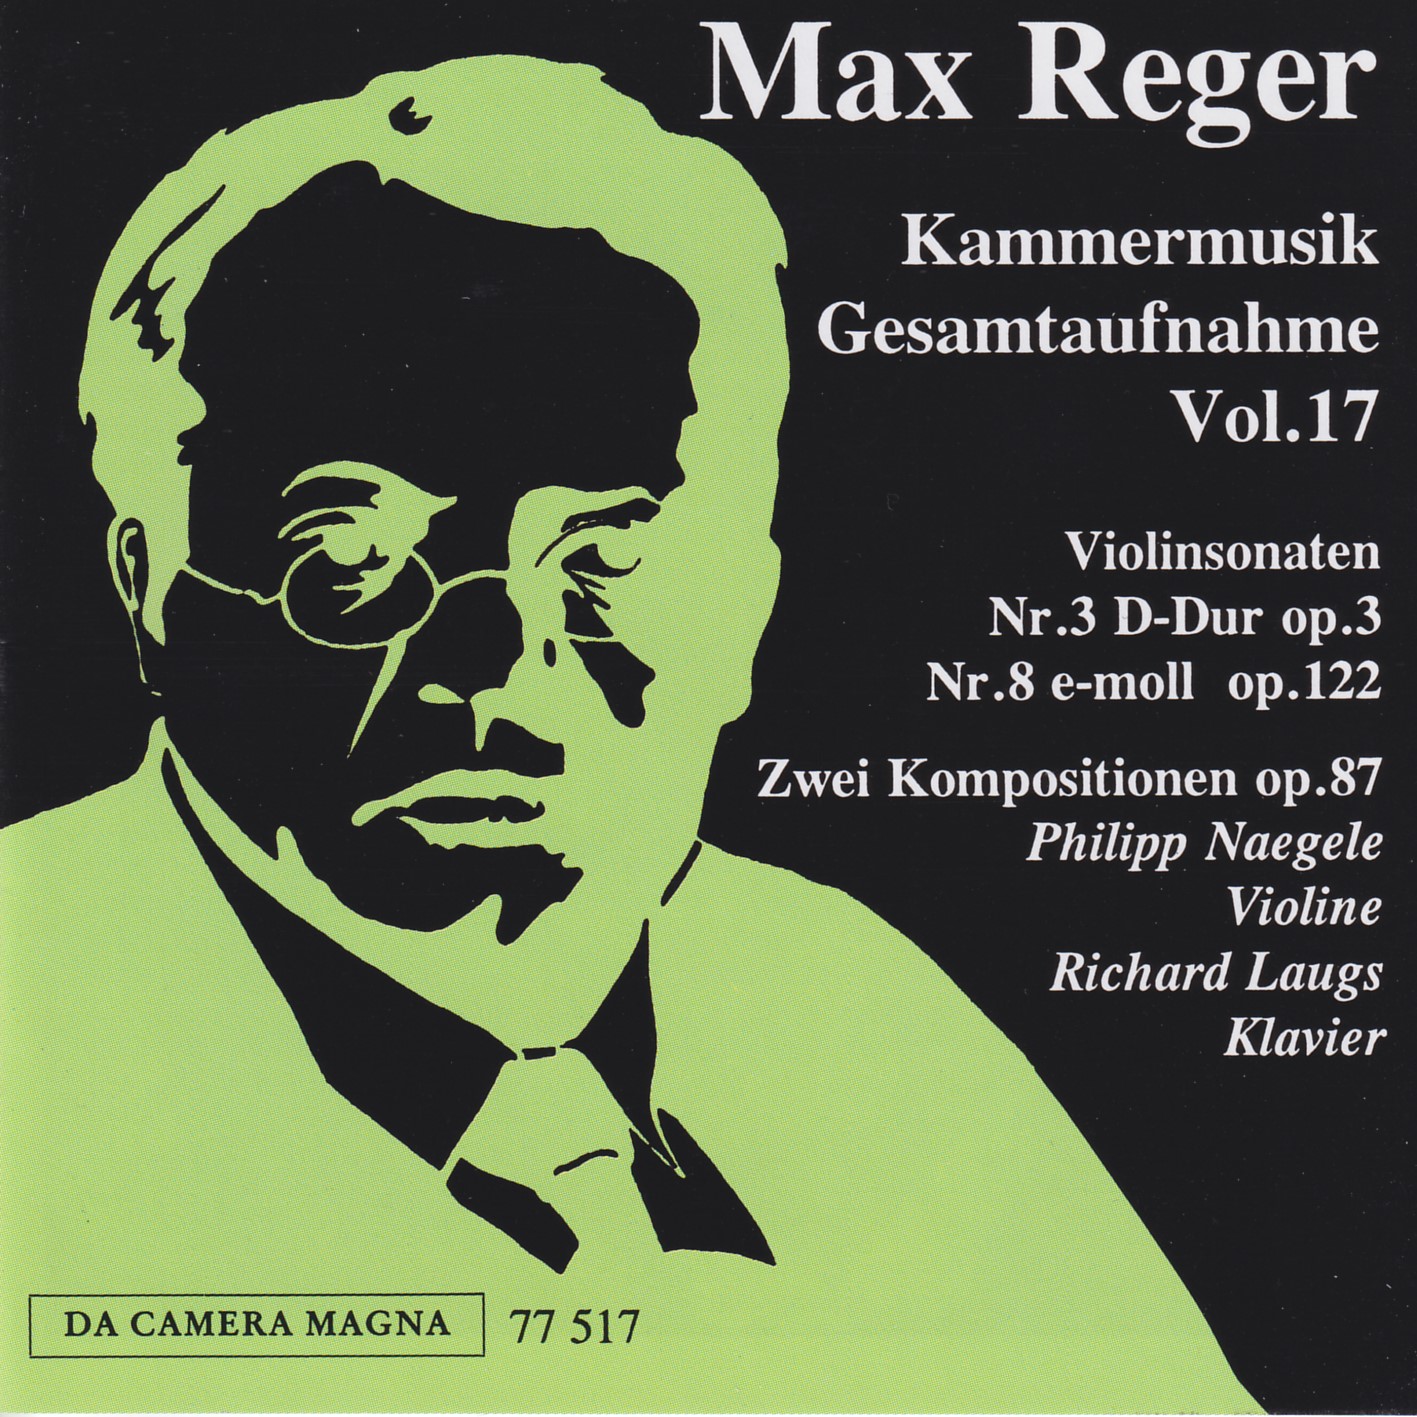 Max Reger - Kammermusik komplett Vol. 17